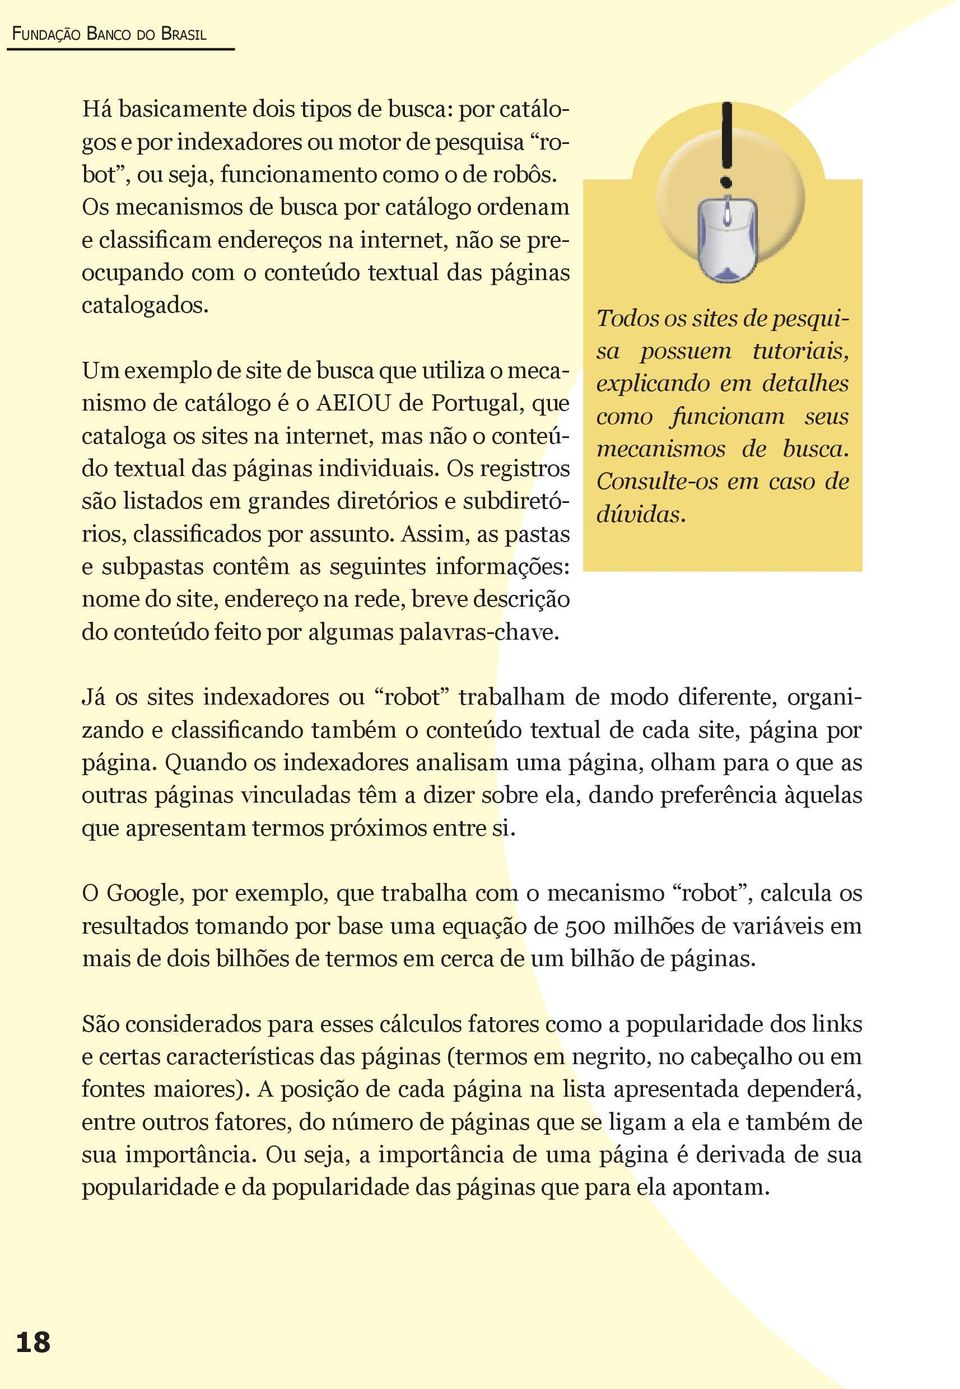 Um exemplo de site de busca que utiliza o mecanismo de catálogo é o AEIOU de Portugal, que cataloga os sites na internet, mas não o conteúdo textual das páginas individuais.